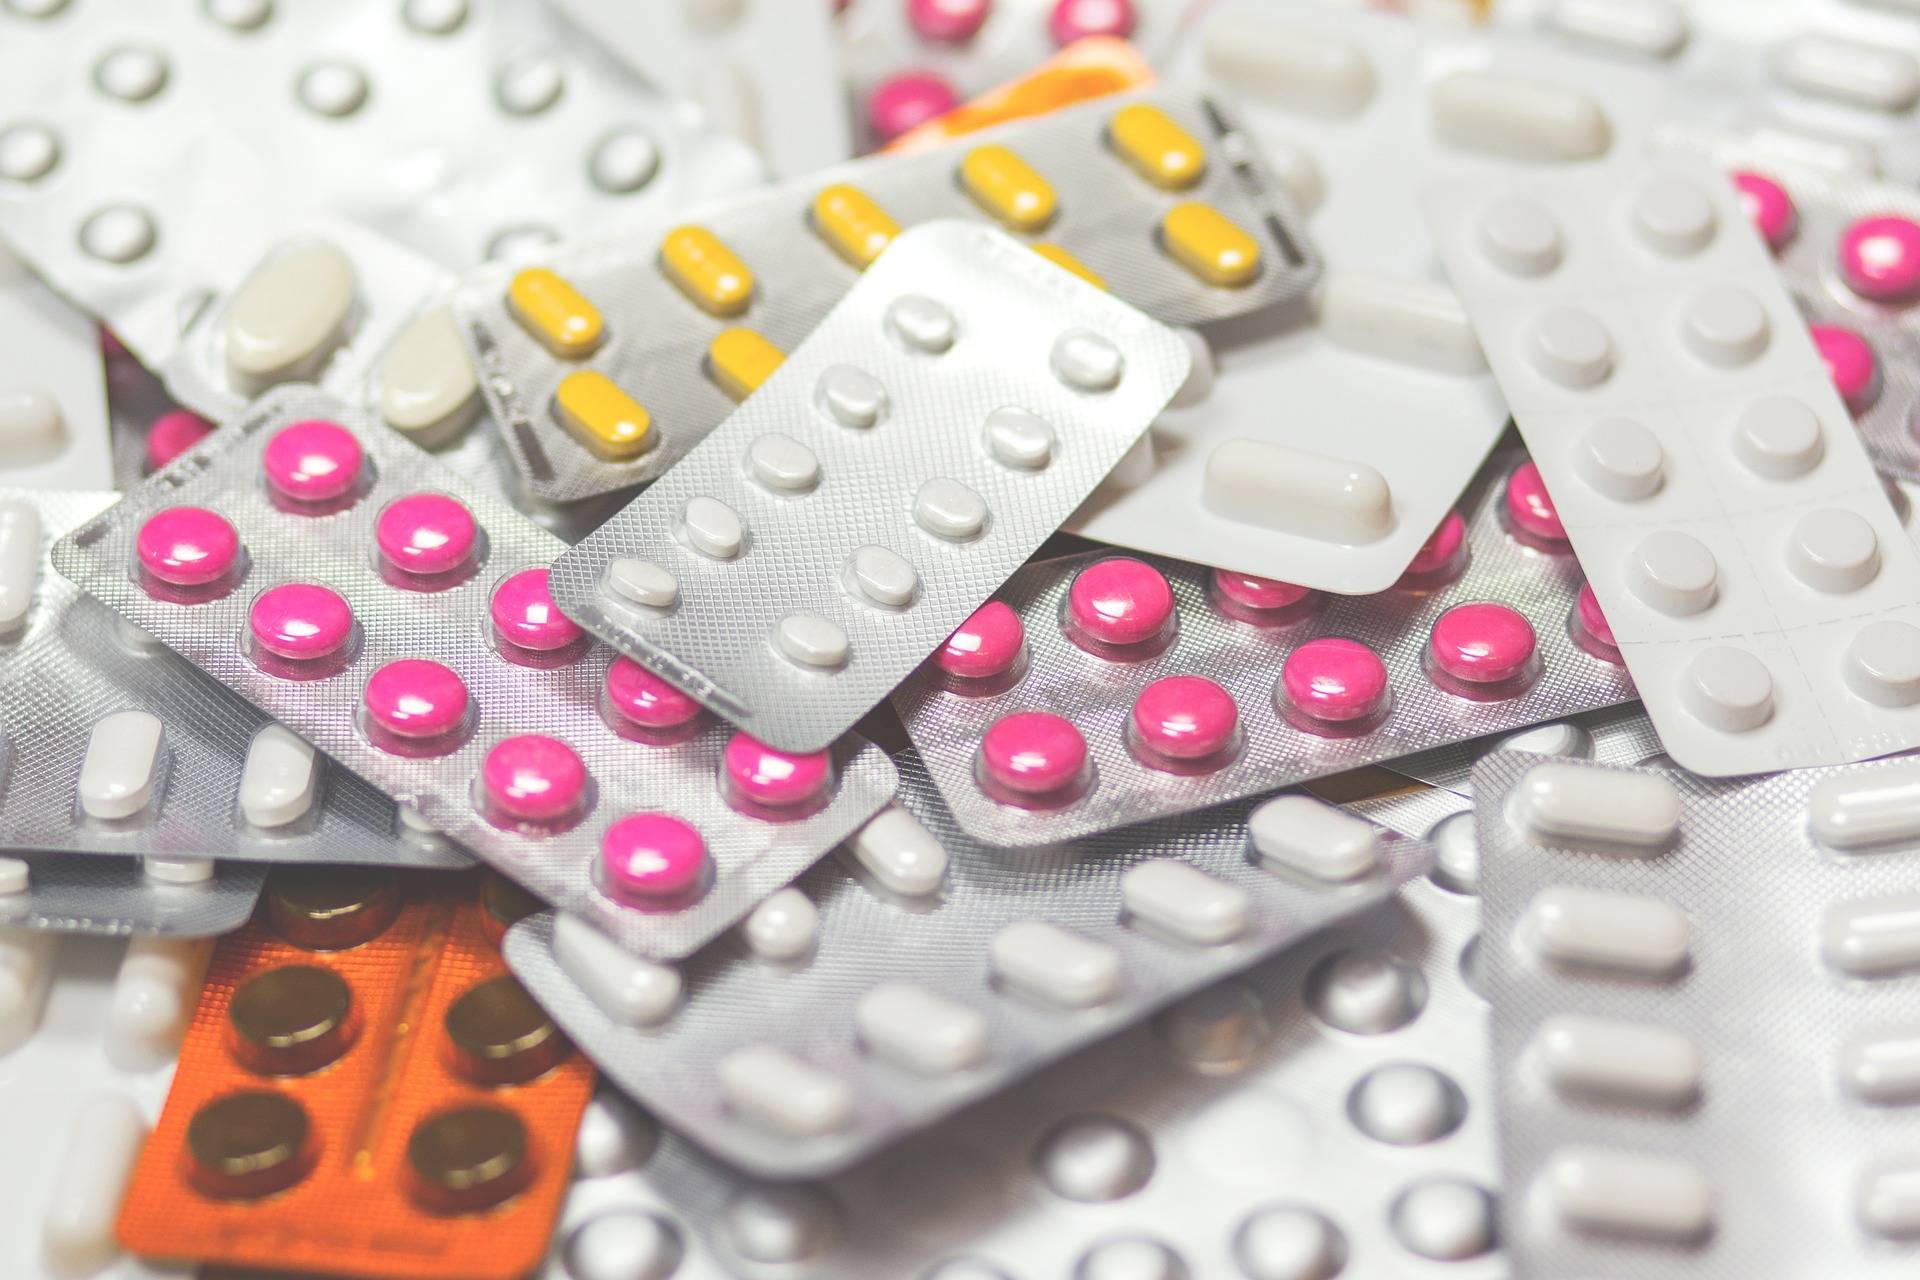 PharmaOnline - Adherenciát javító program indul a gyógyszertárakban, Közös javító tabletták